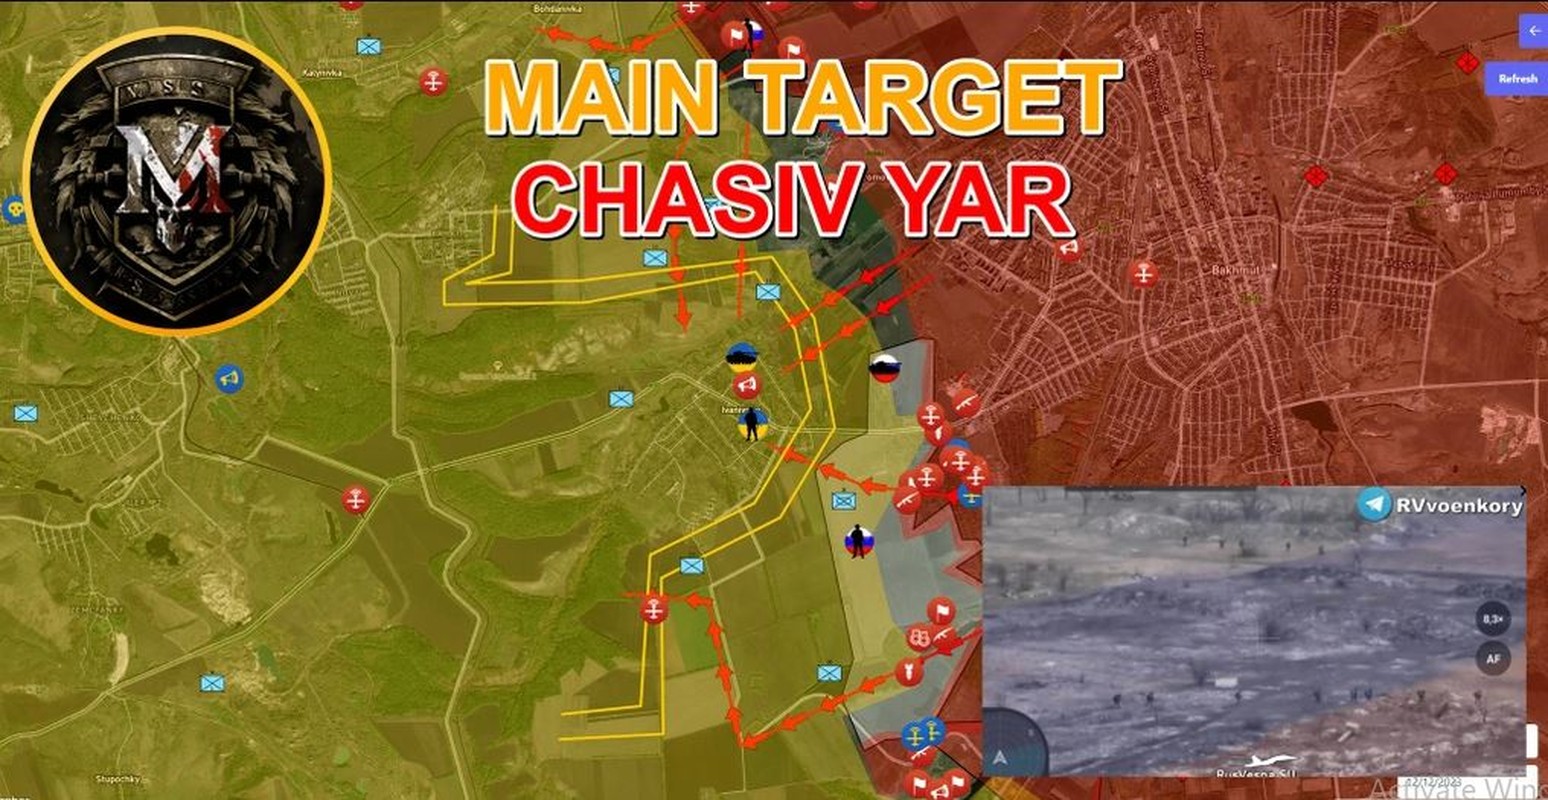 View - 	Quân Nga sử dụng chiến thuật nào để đánh cứ điểm Chasov Yar